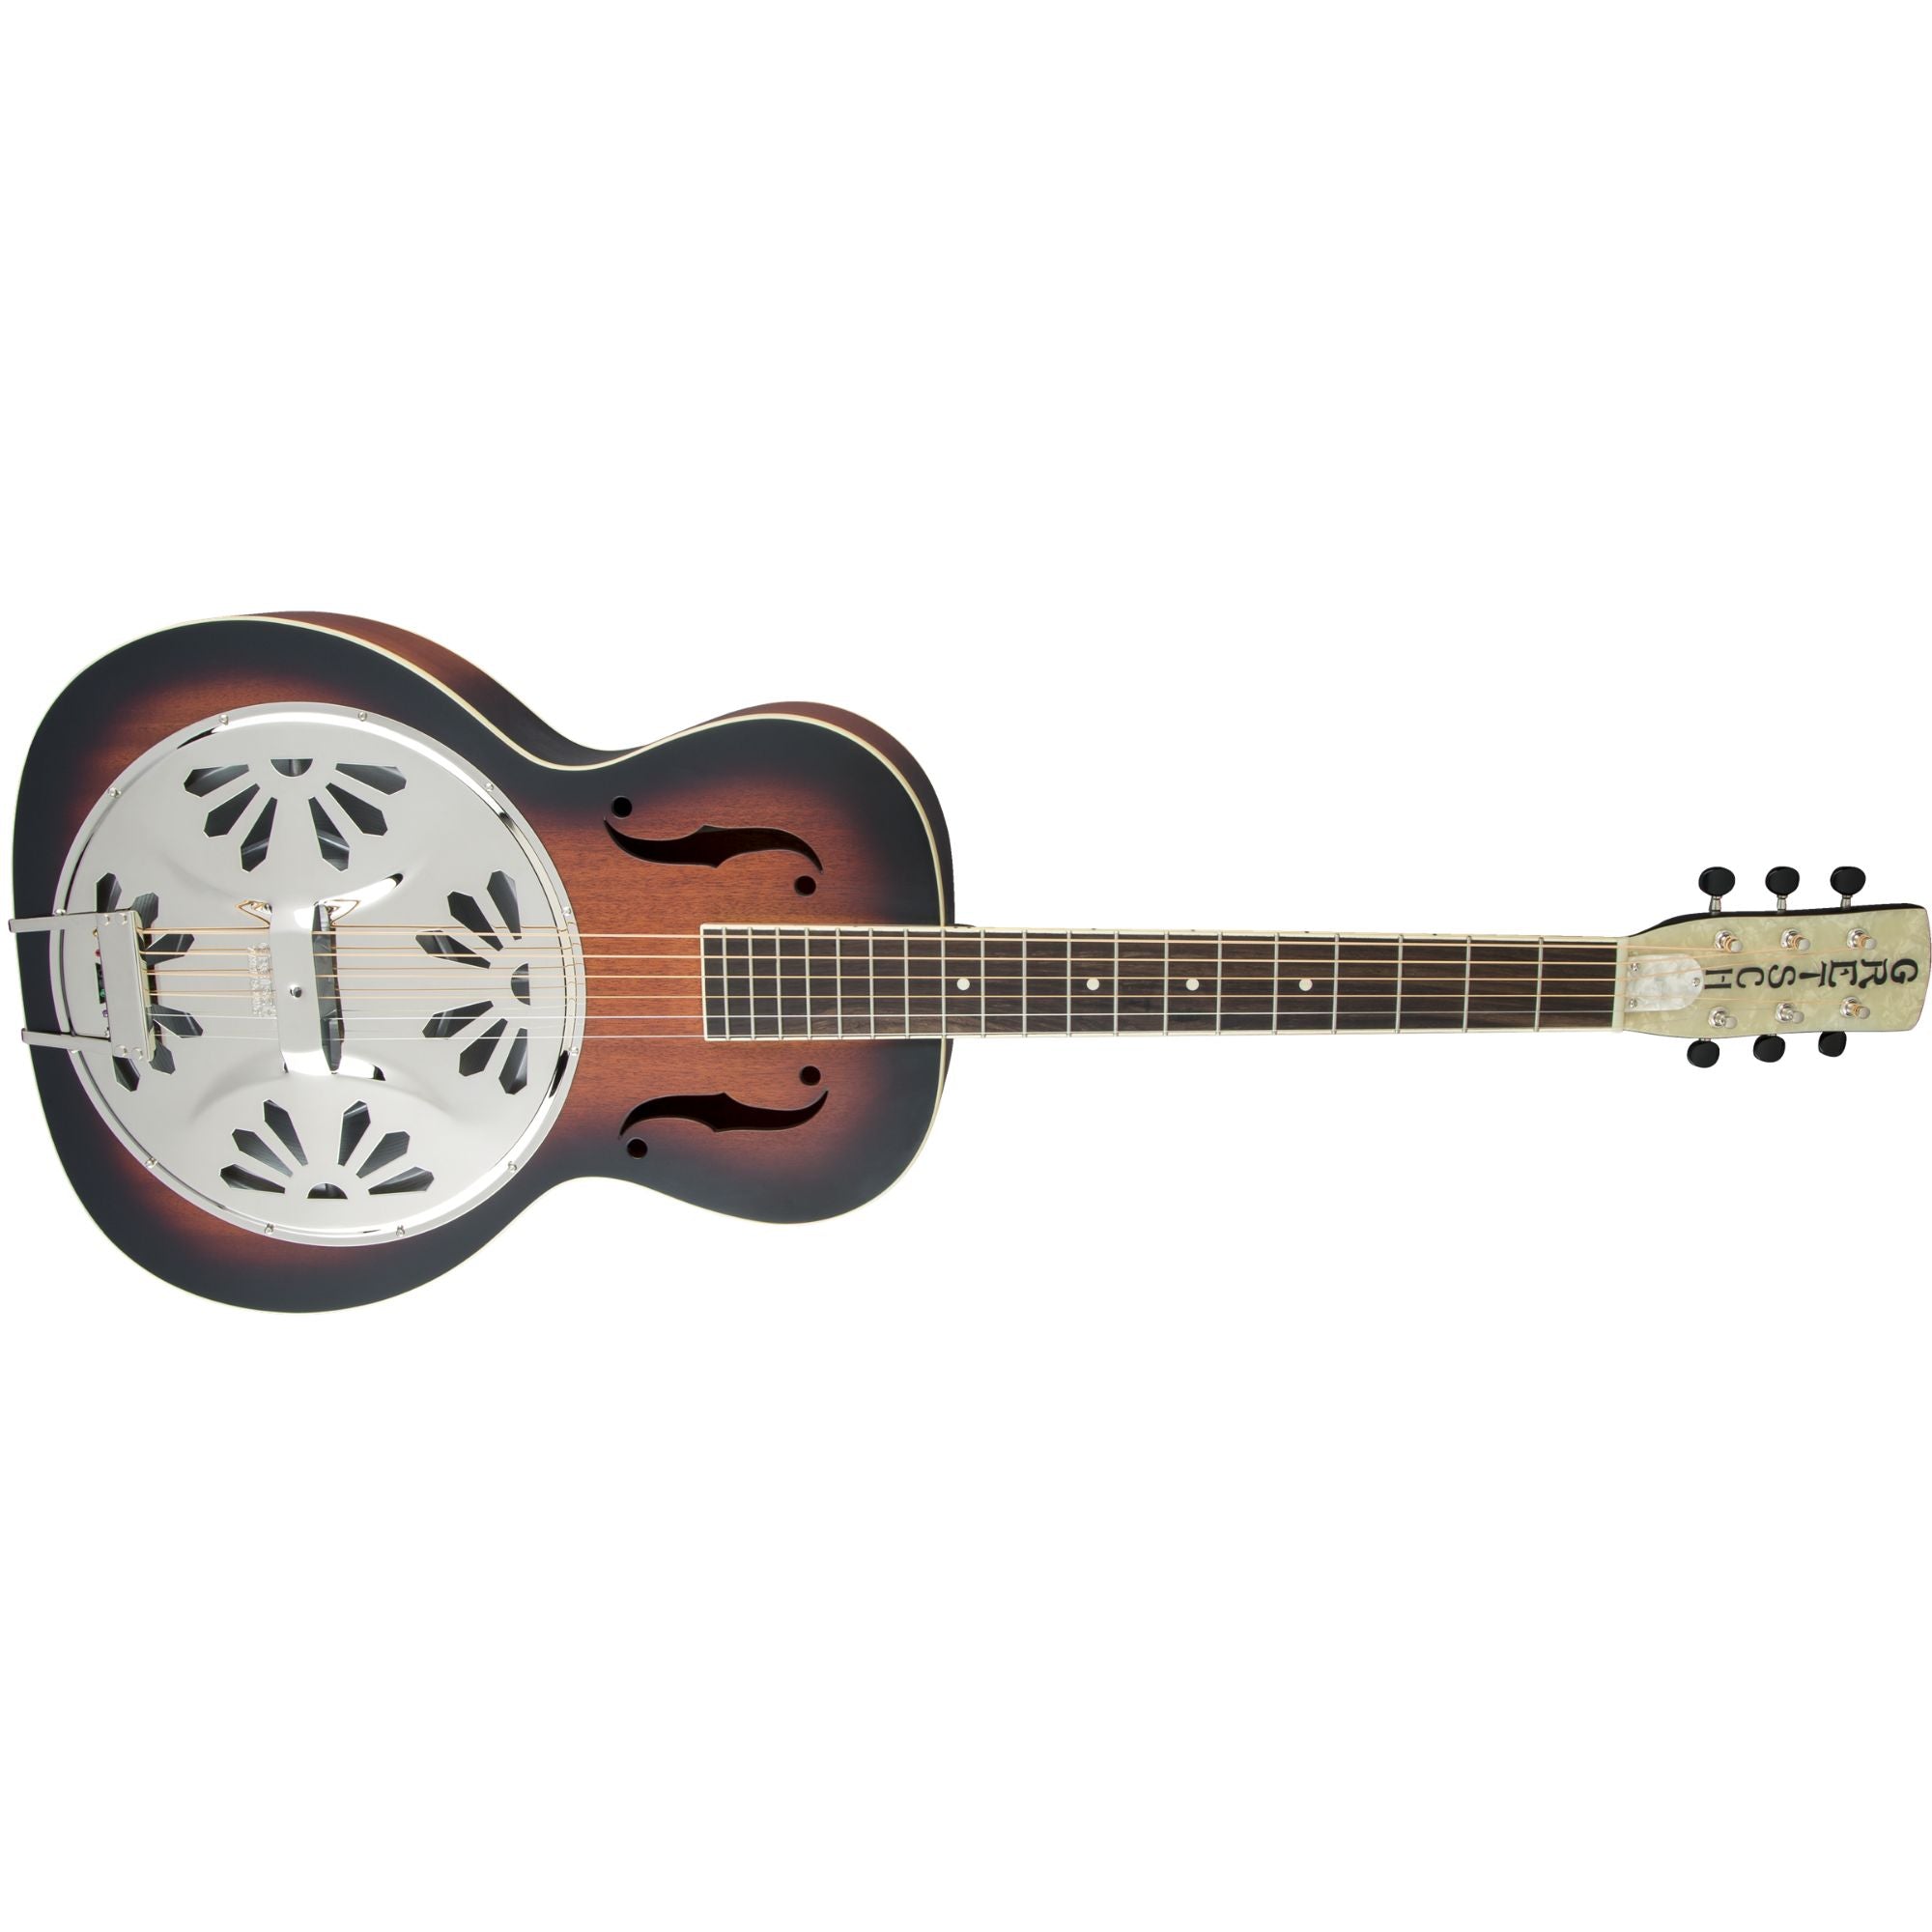 Gretsch G9220 Bobtail Round-Neck Resonator Guitar, 2-Color Sunburst